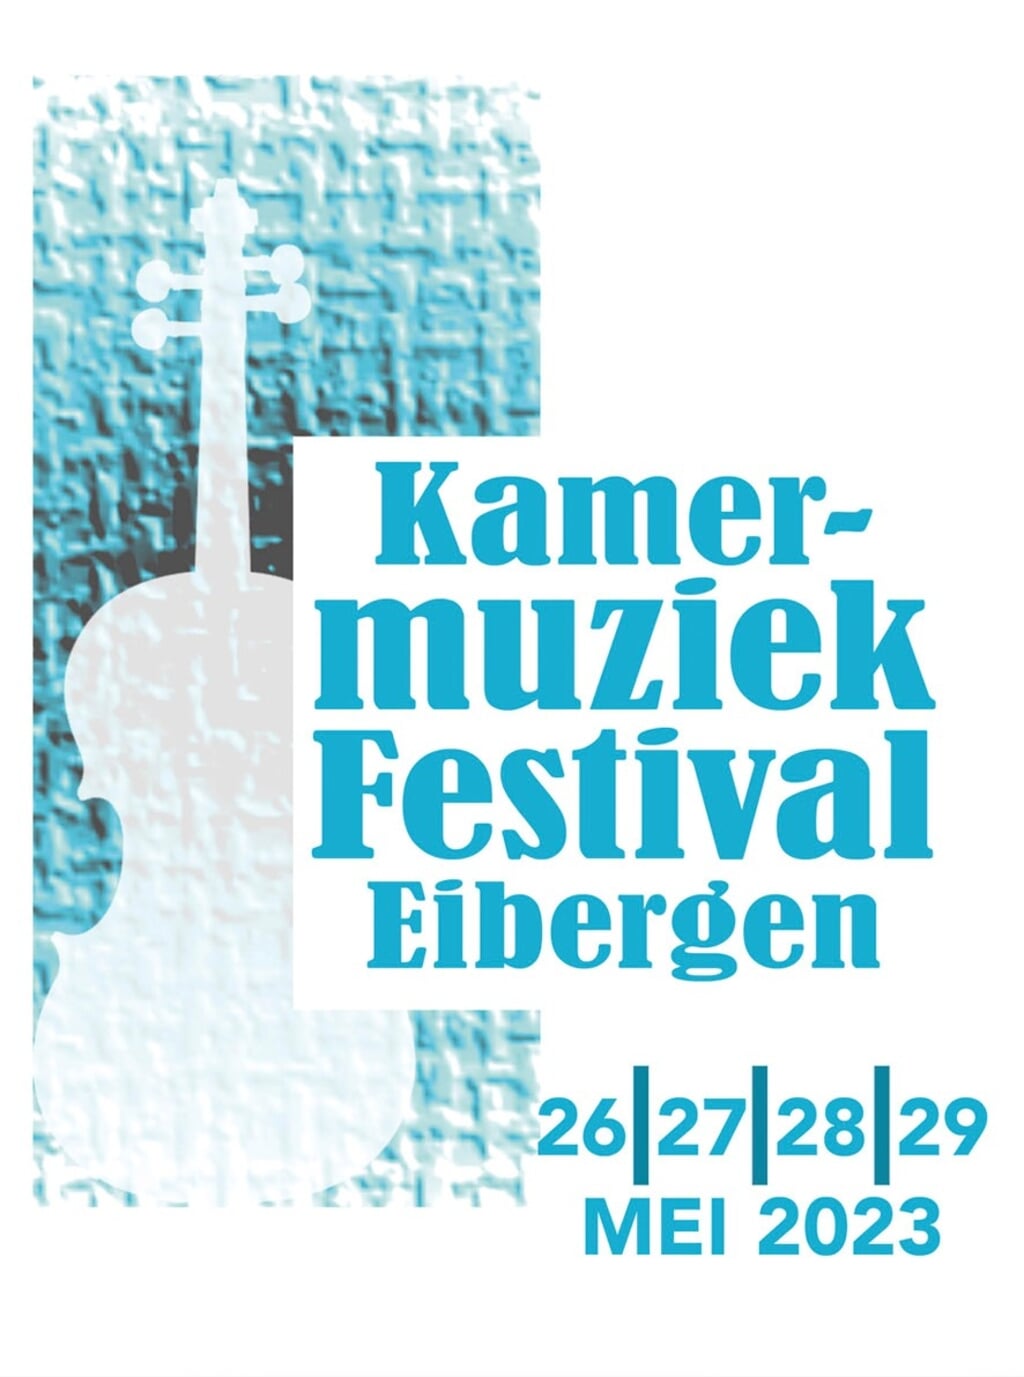 Het beeldmerk van het Kamermuziekfestival Eibergen, dat van 26 tot en met 29 mei wordt gehouden in gemeente Berkelland. 